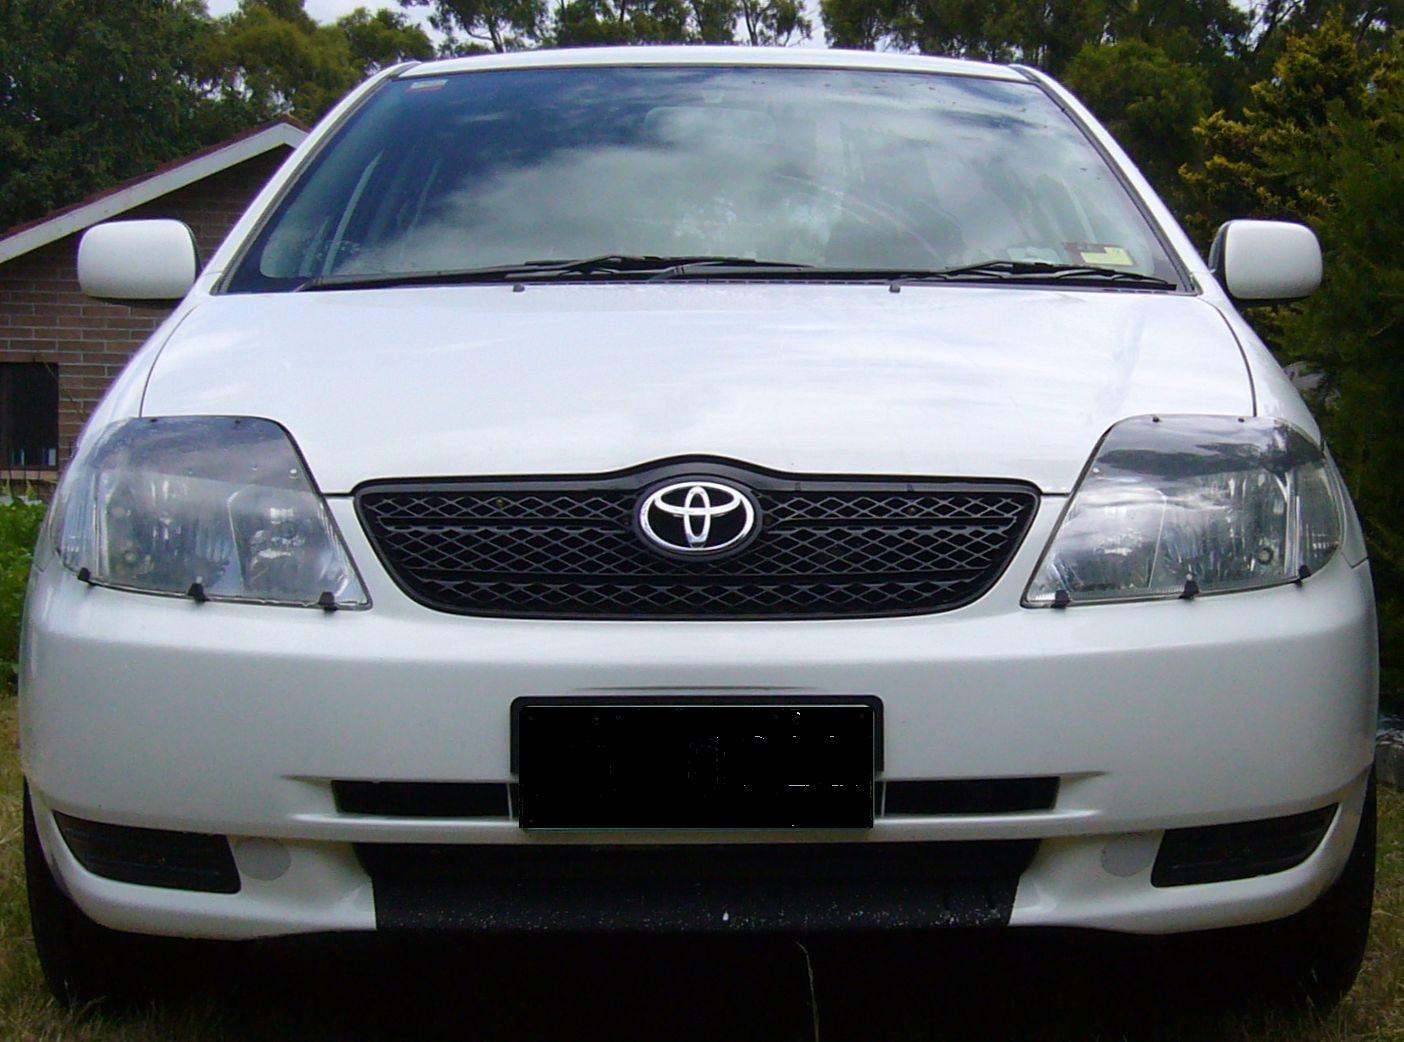 2002 Corolla Wagon